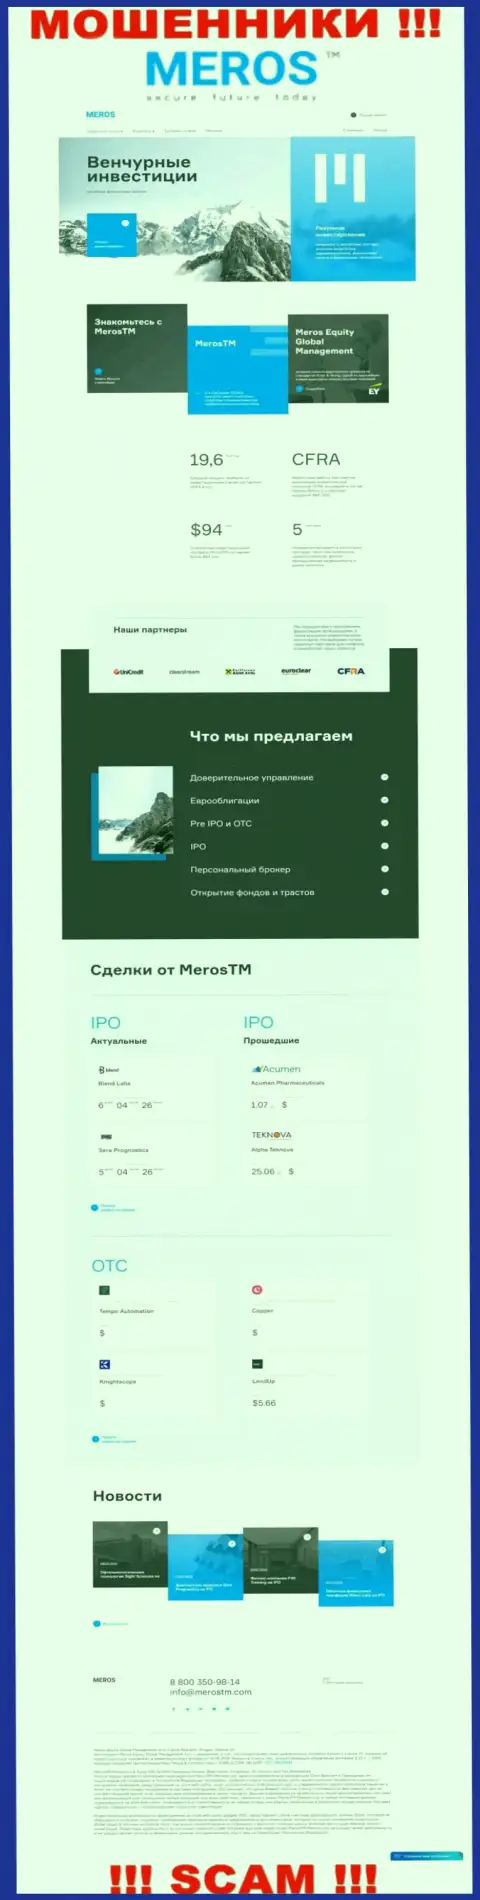 Обзор официального web-портала махинаторов MerosTM